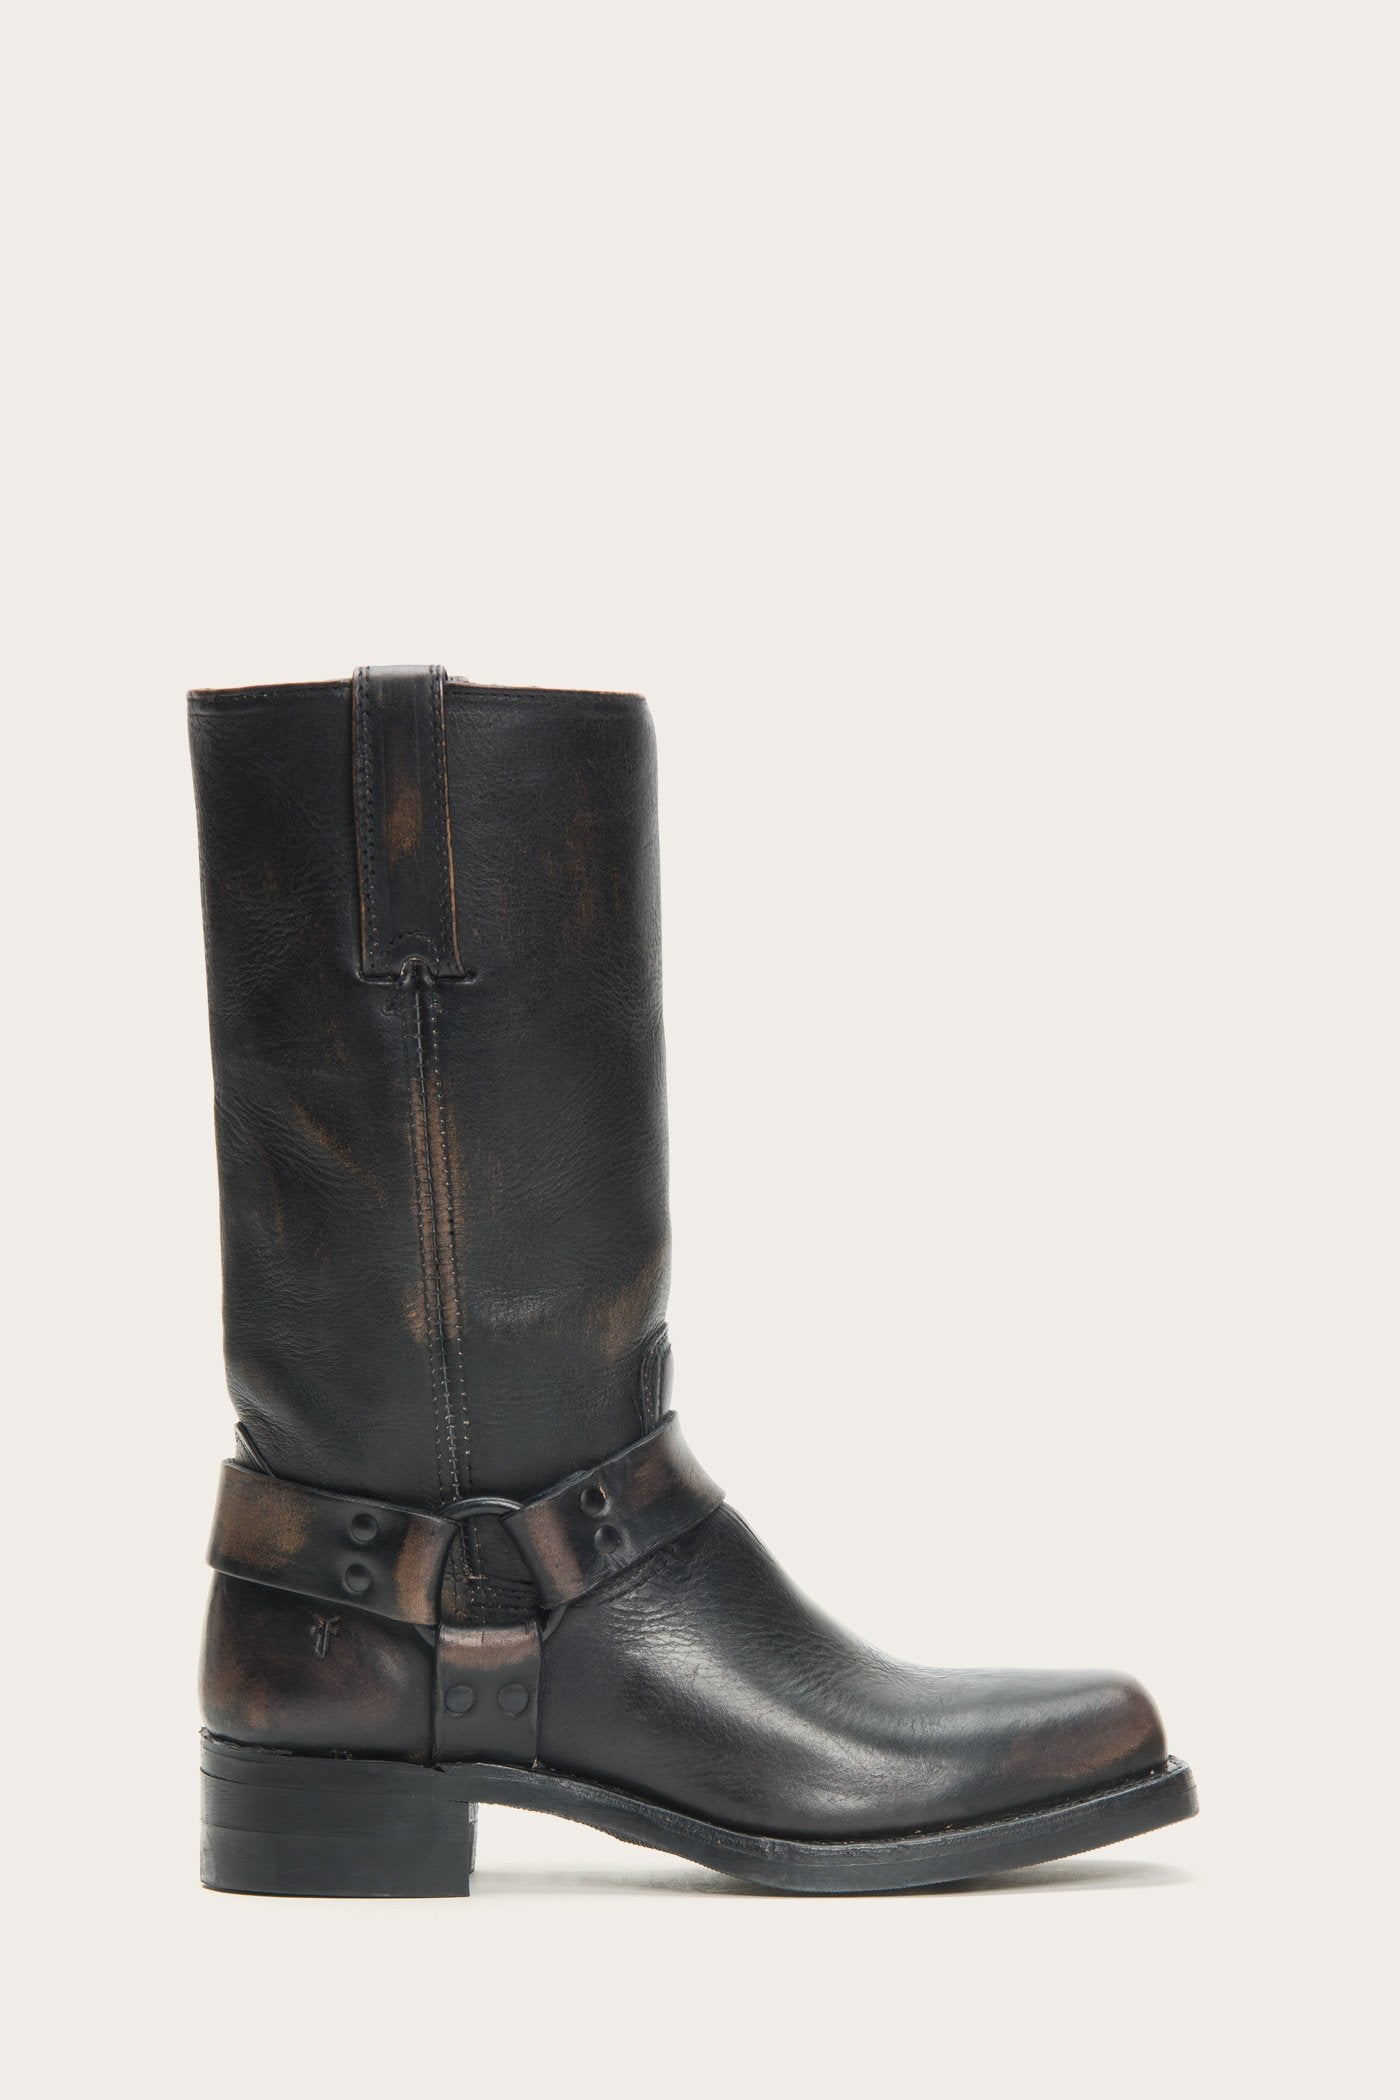 women's frye boots wide width